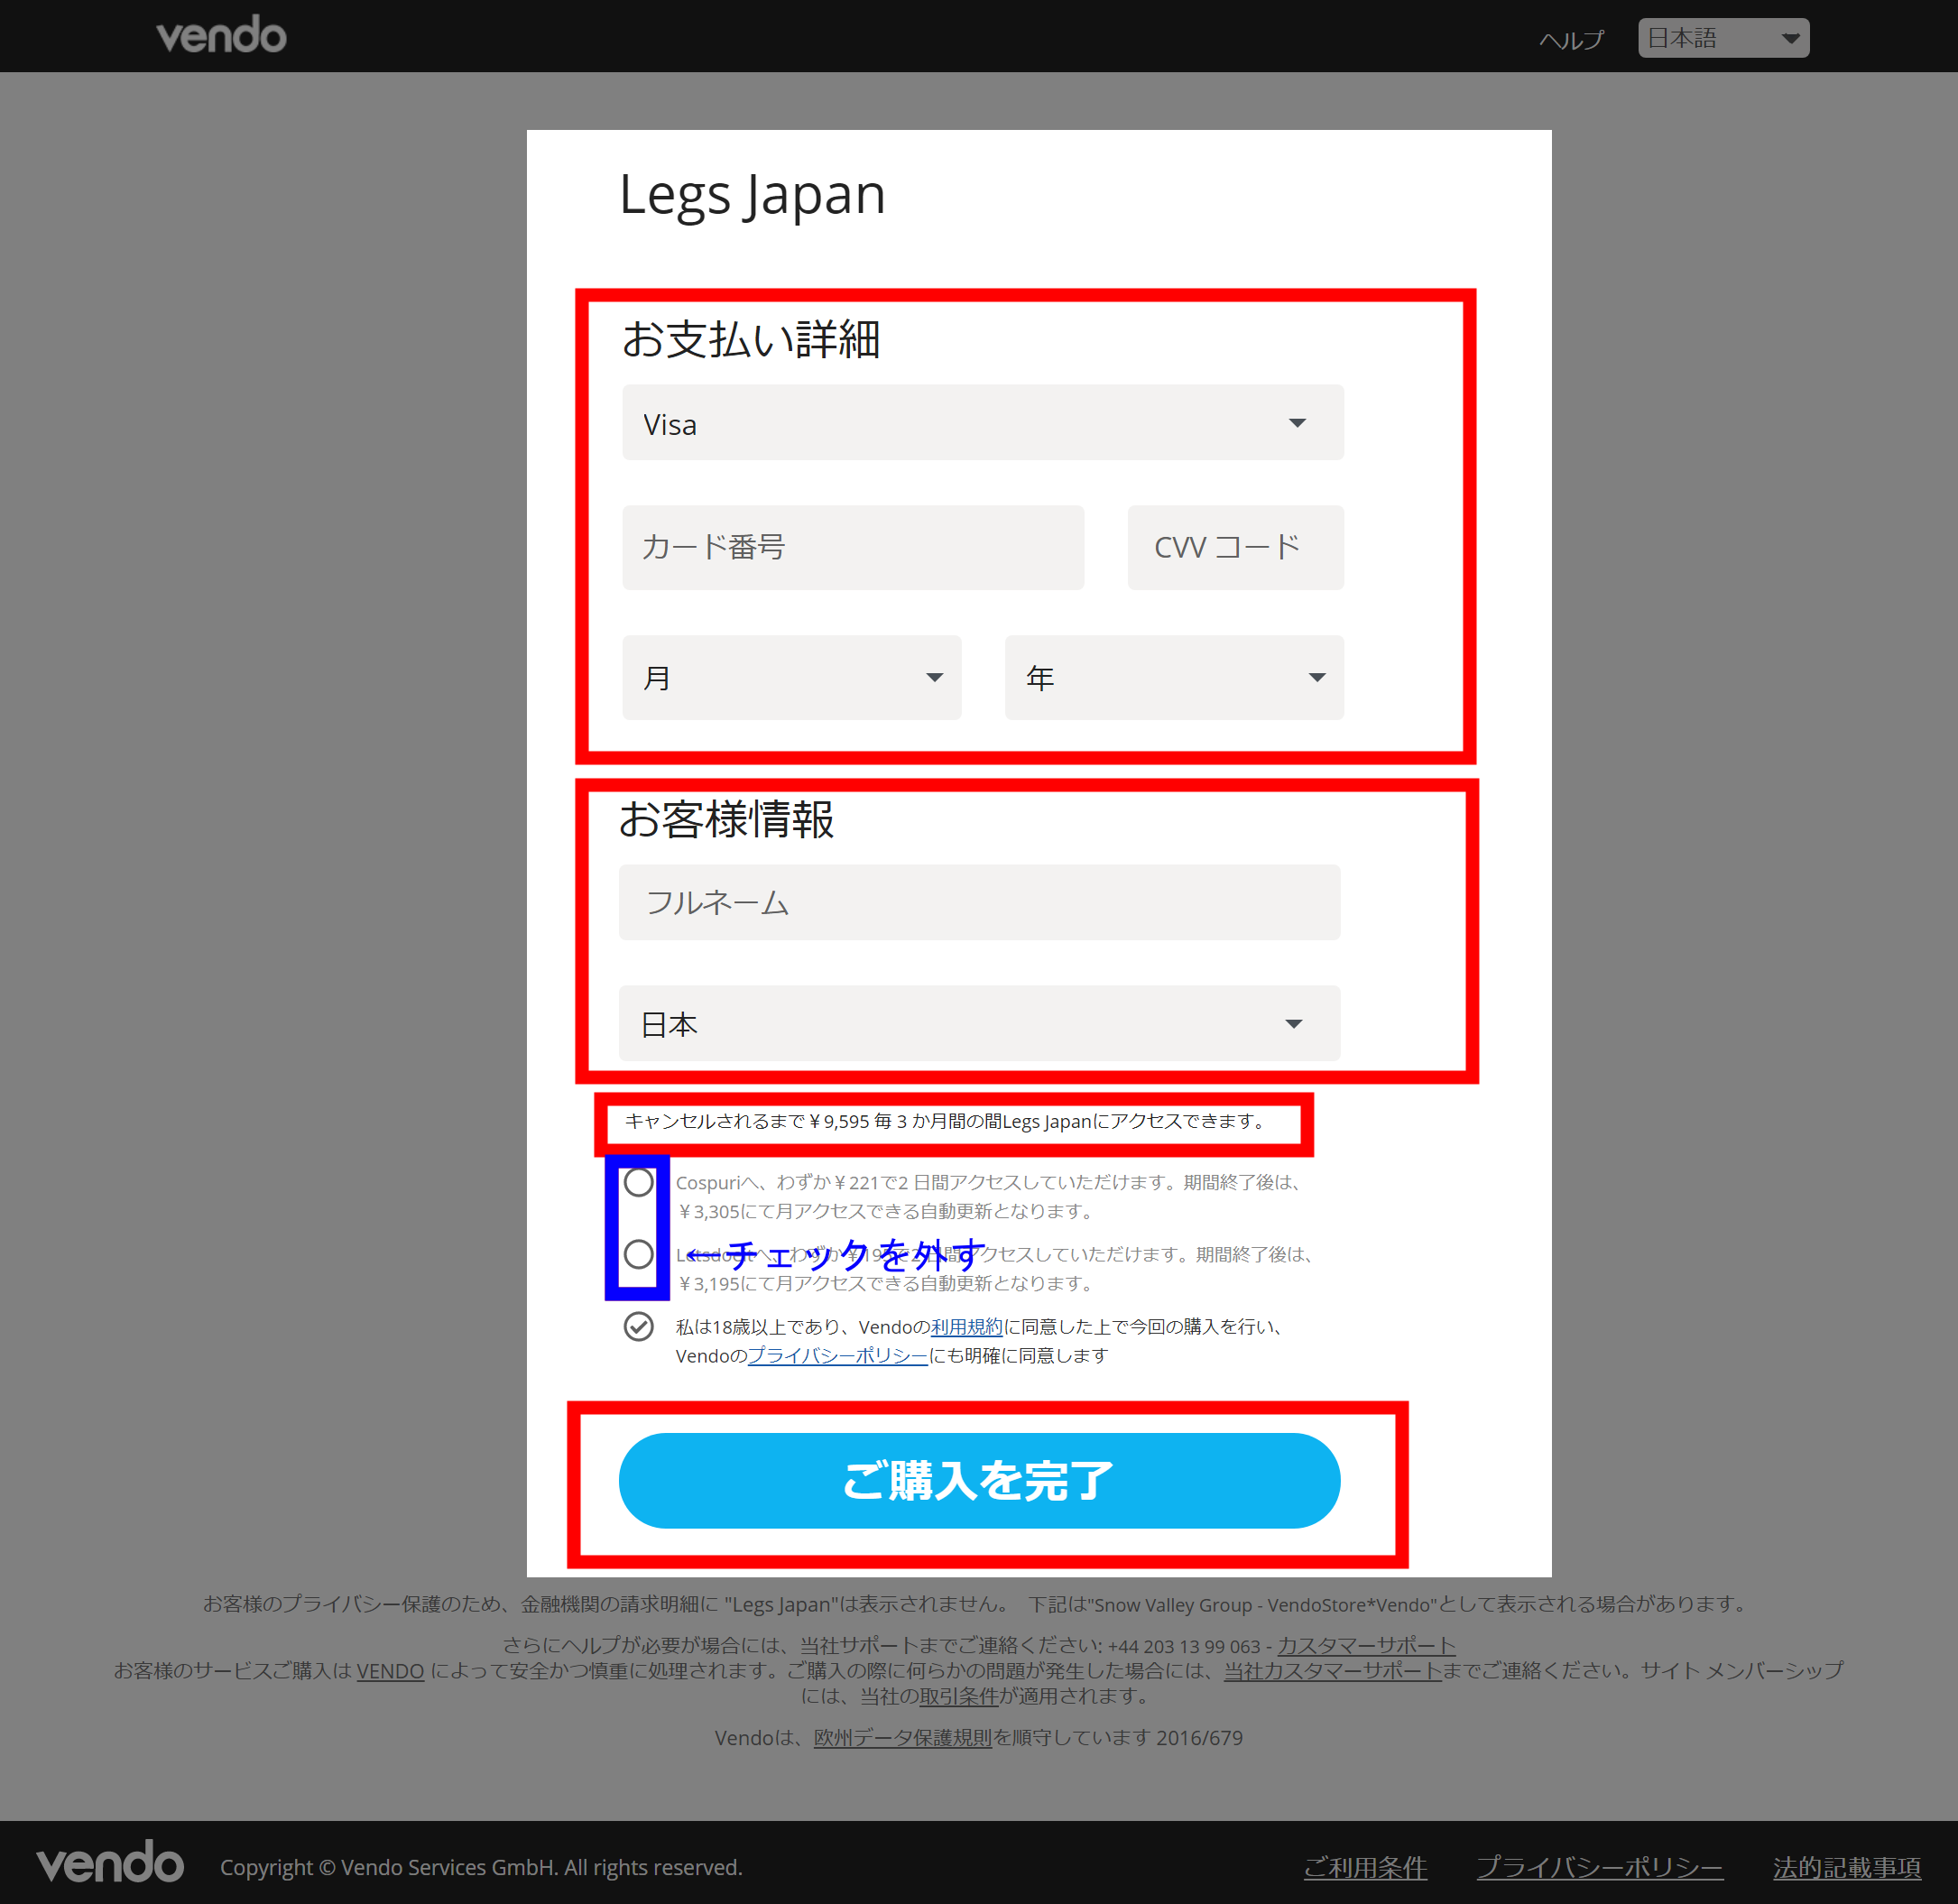 Legs Japan(レッグスジャパン)会員登録フォーム